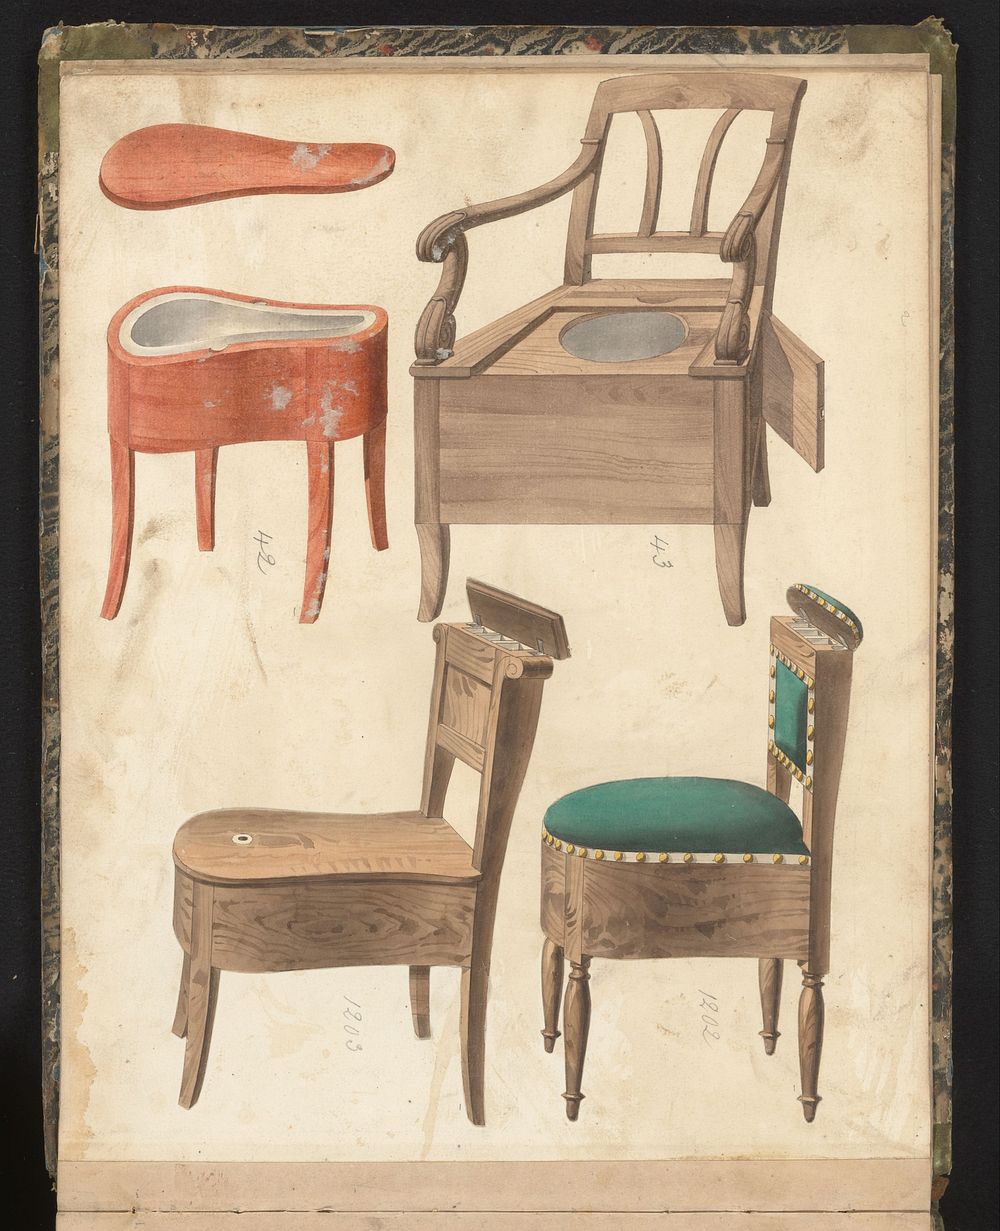 Vier ontwerpen voor wc-meubelen (c. 1825 - c. 1839) by anonymous